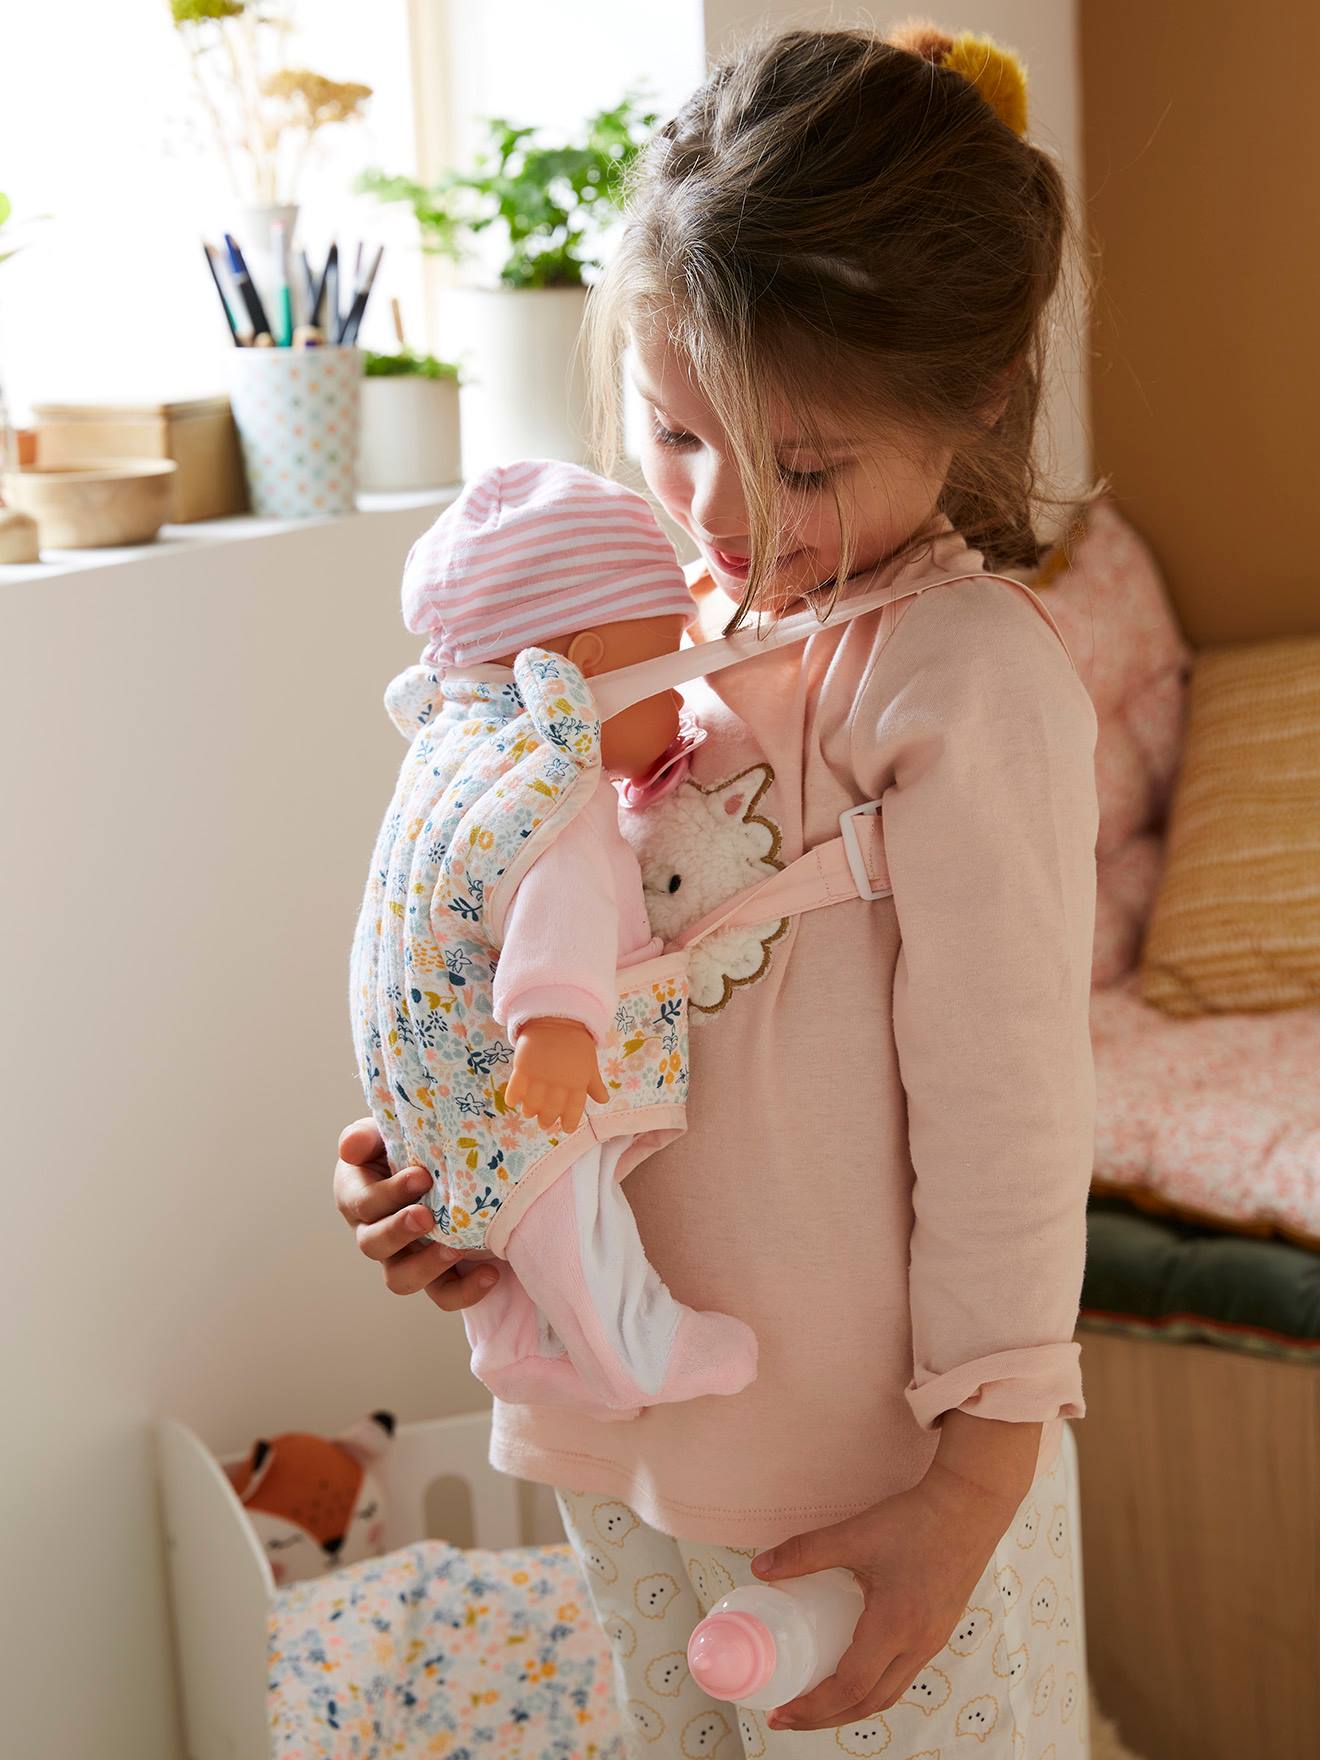 Porte-bébé pour poupée - ZAPF CREATION - Baby born - Rose - Pour